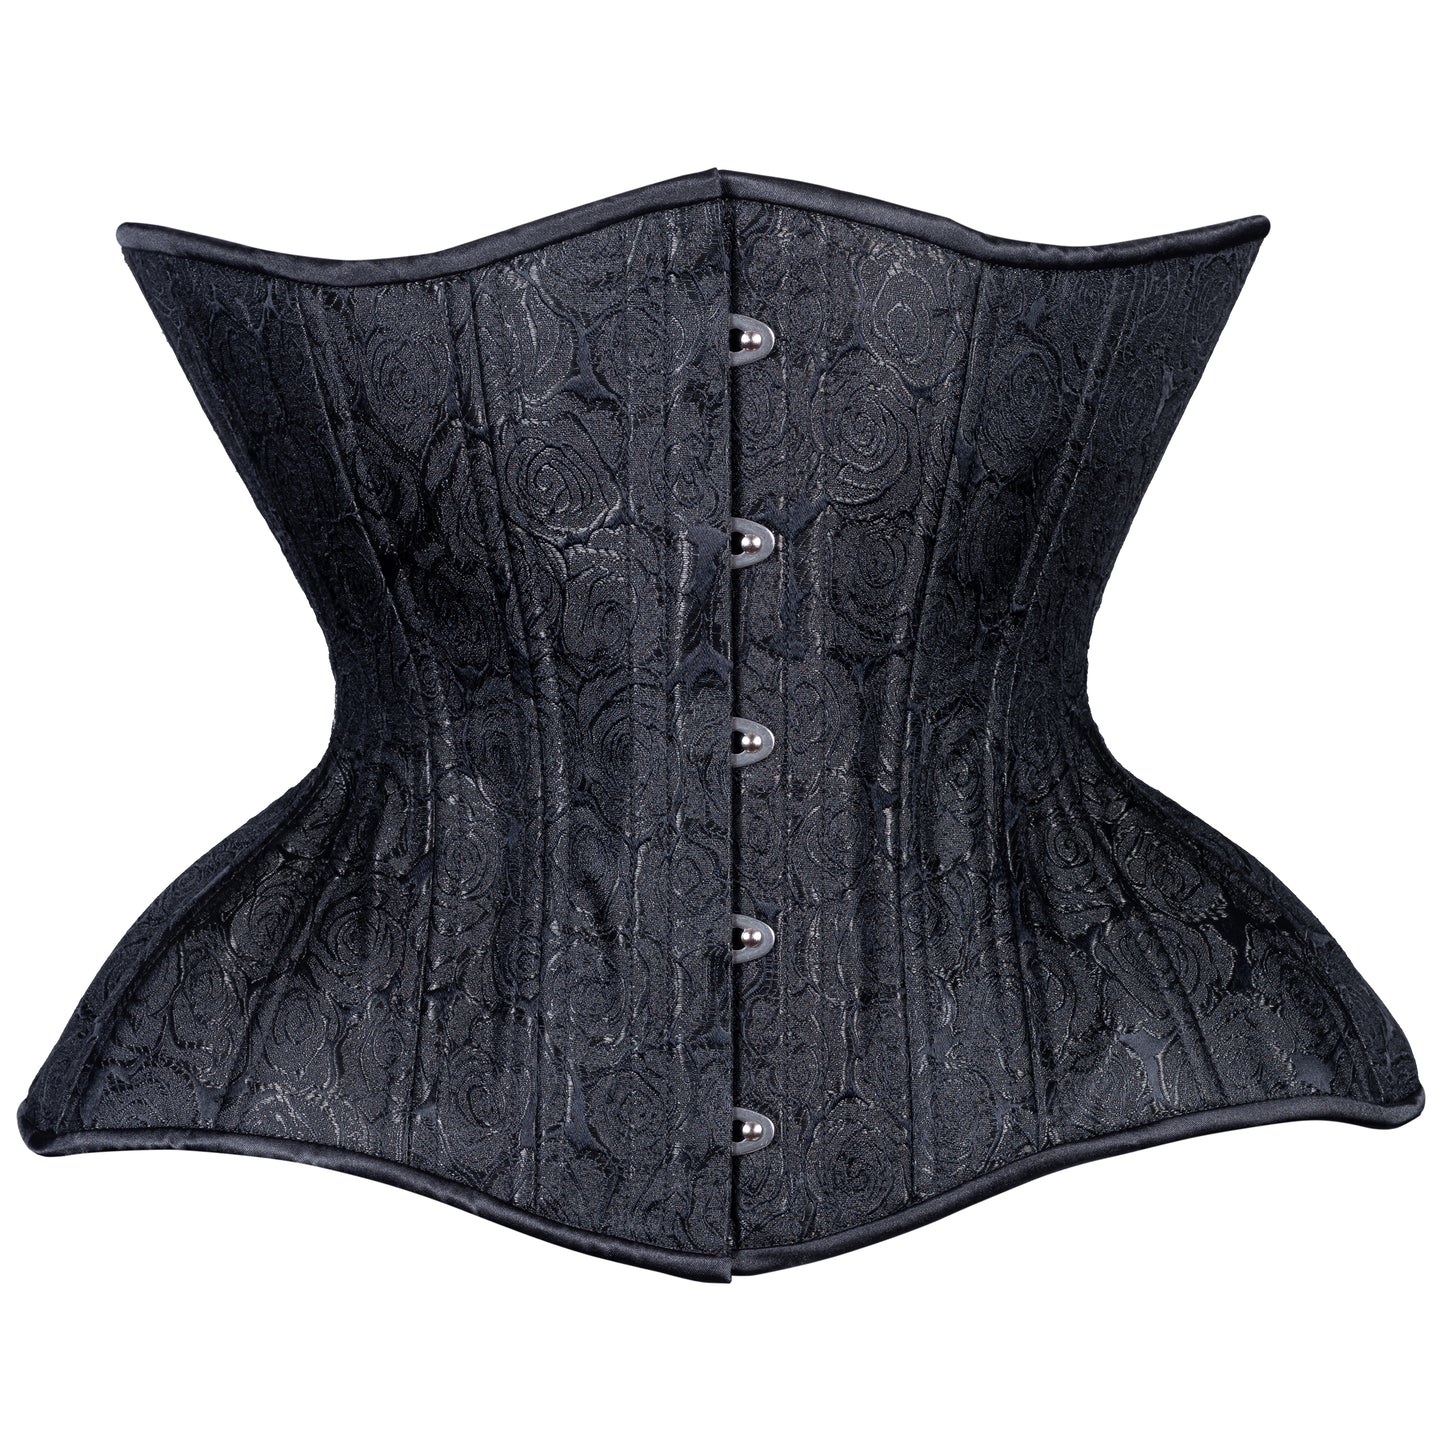 Victorian wasp waist #fashion #corset